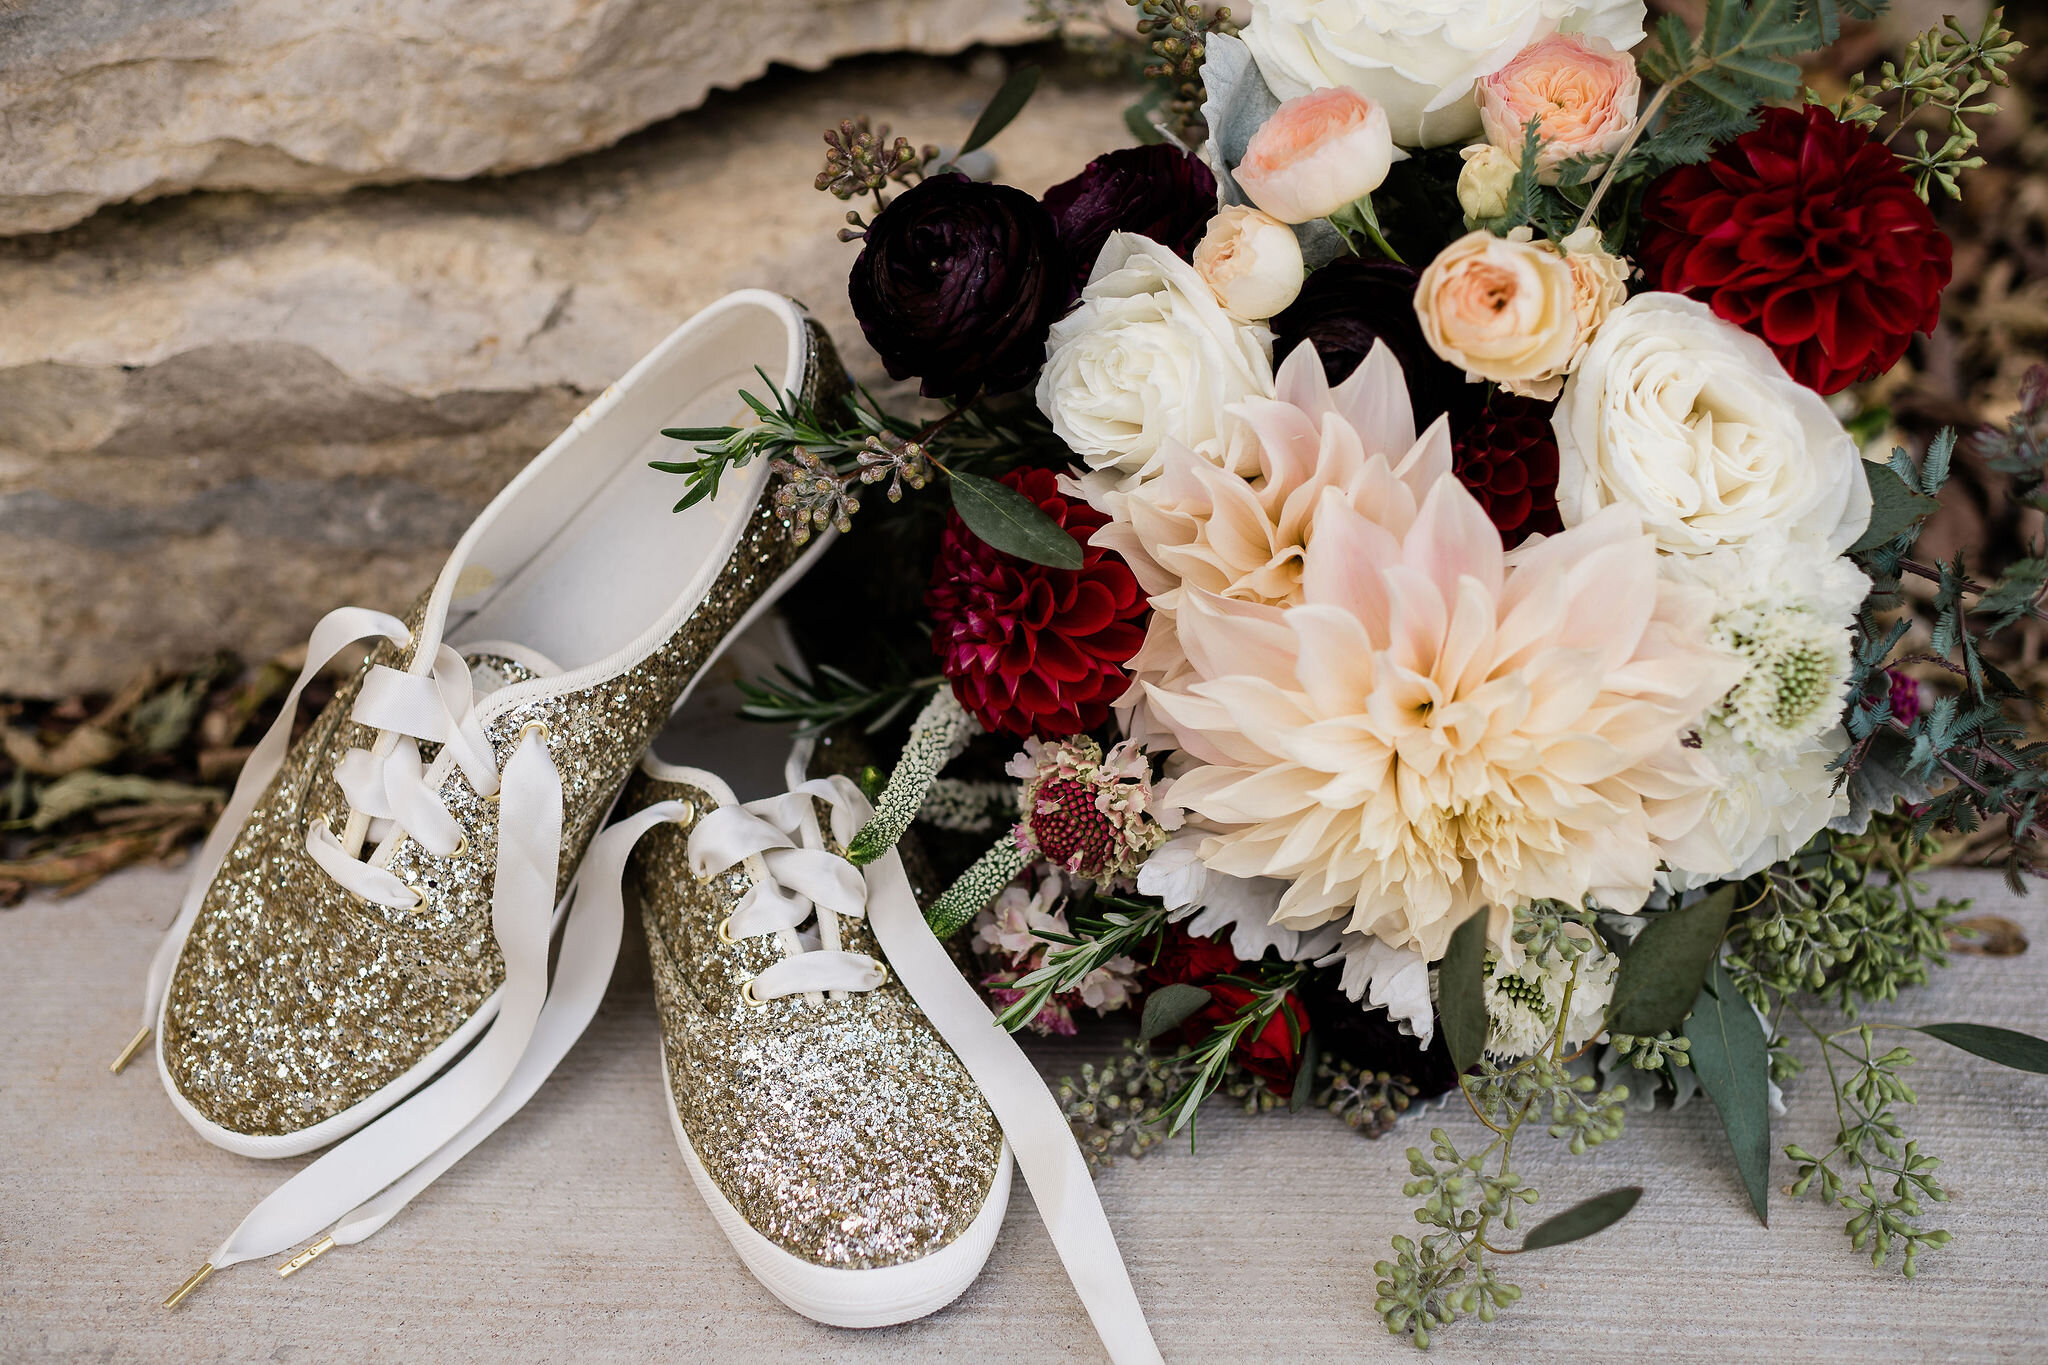 Bride's bouquet and shoes